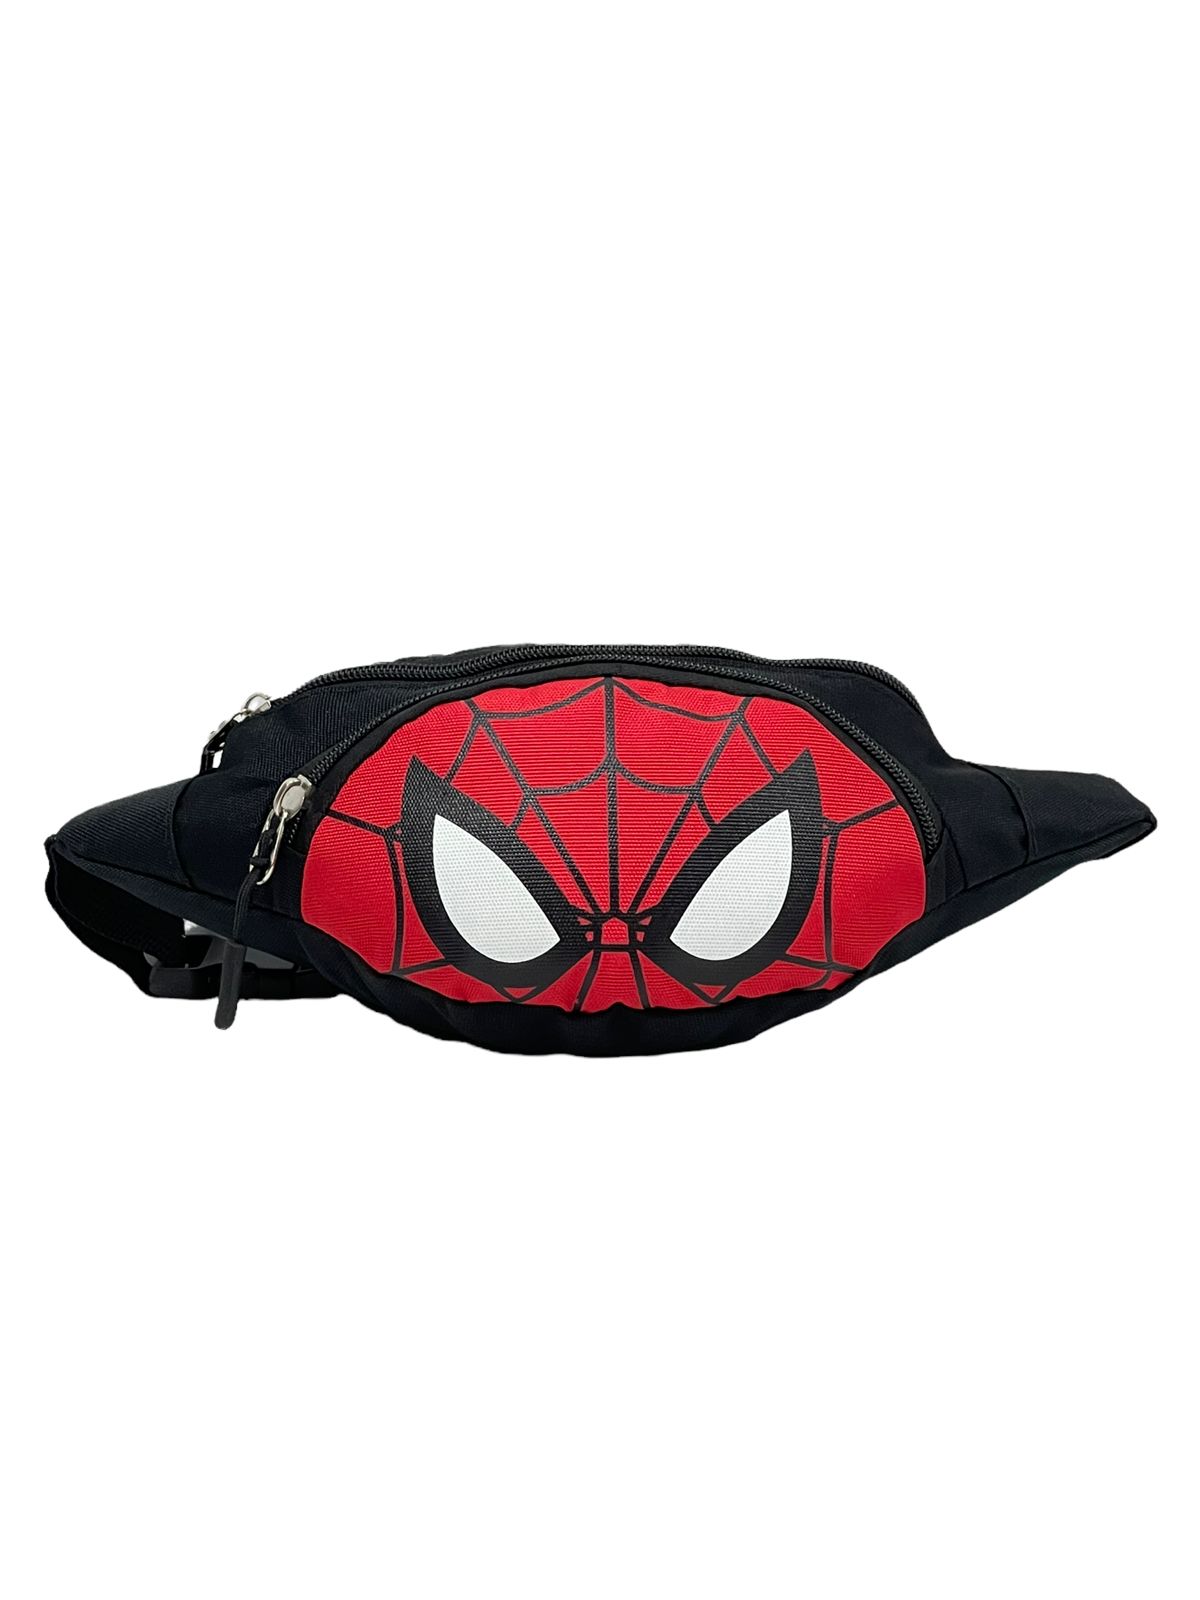 Детская сумка BAGS-ART Человек паук на пояс, черно-красный